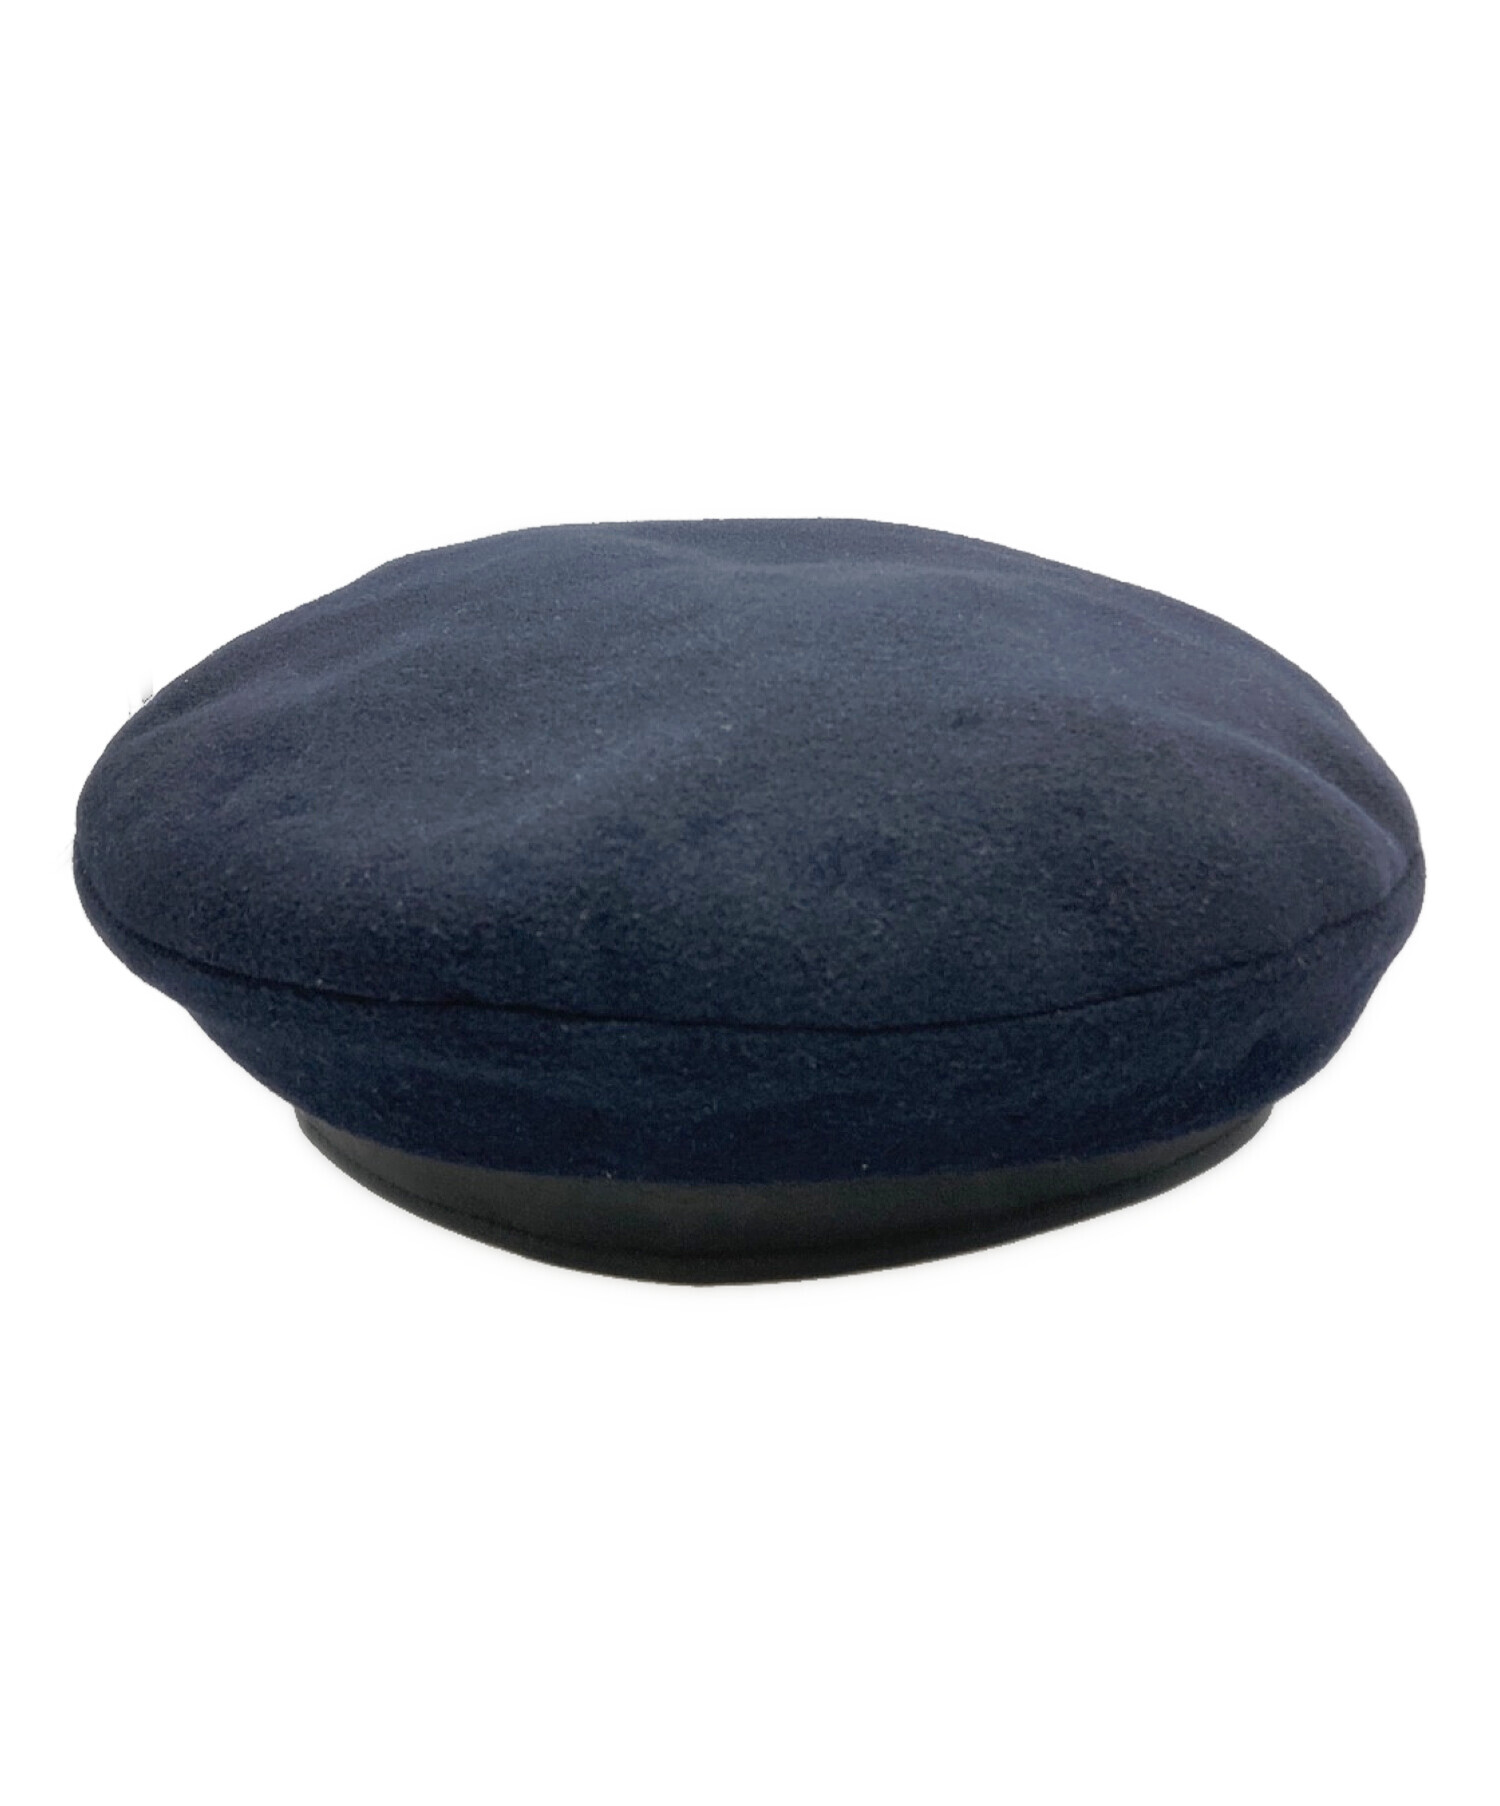 MOTSCH POUR HERMES (モッチプールエルメス) カシミヤベレー帽 ブラック